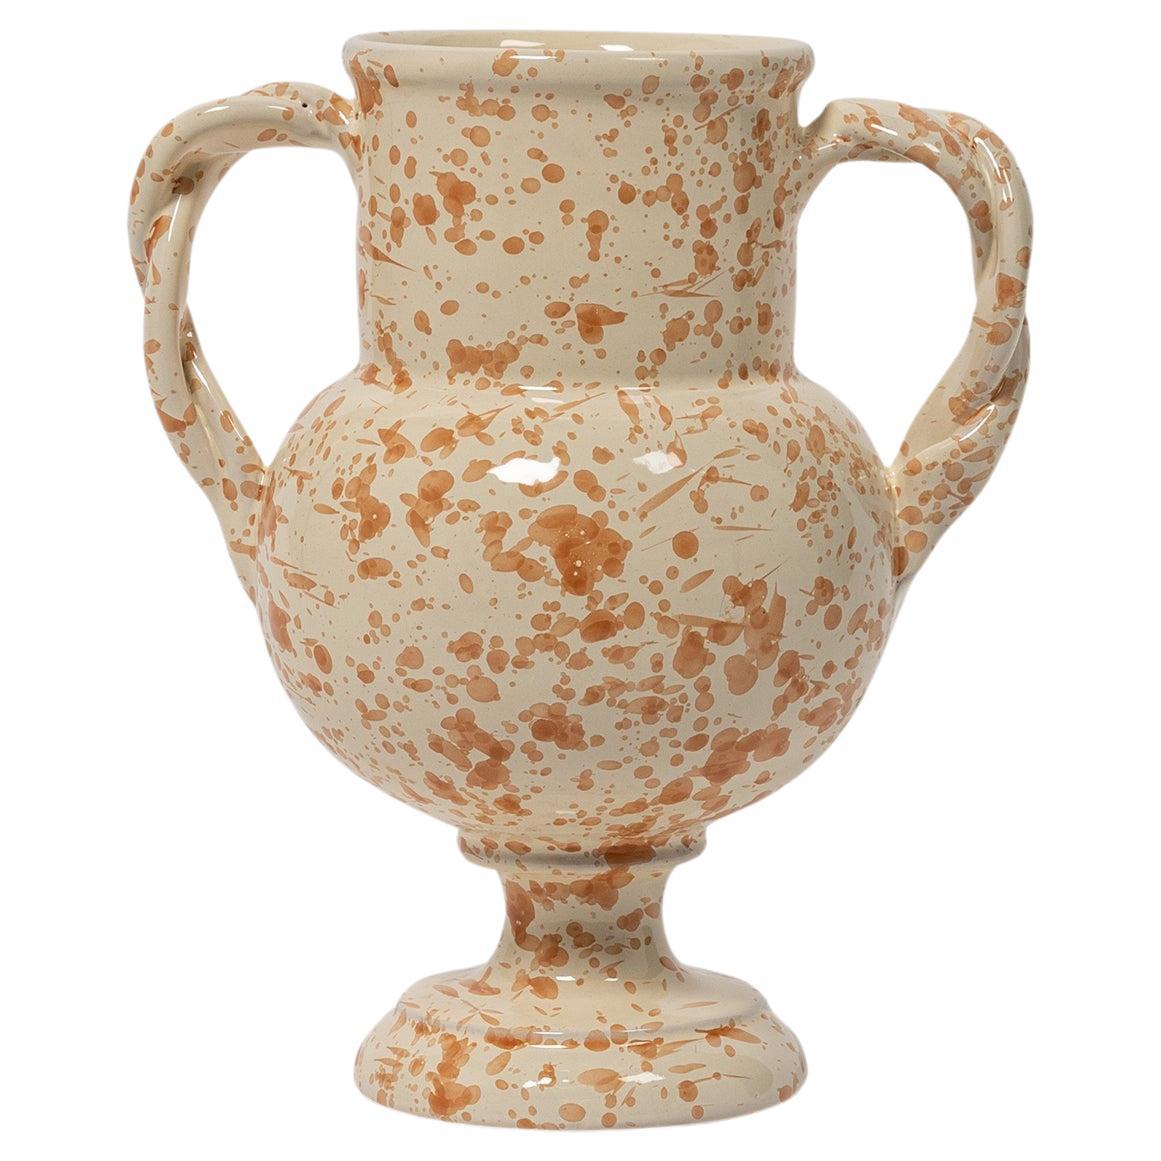 Splatter Vase, ceramic, greek urn inspired, Tan